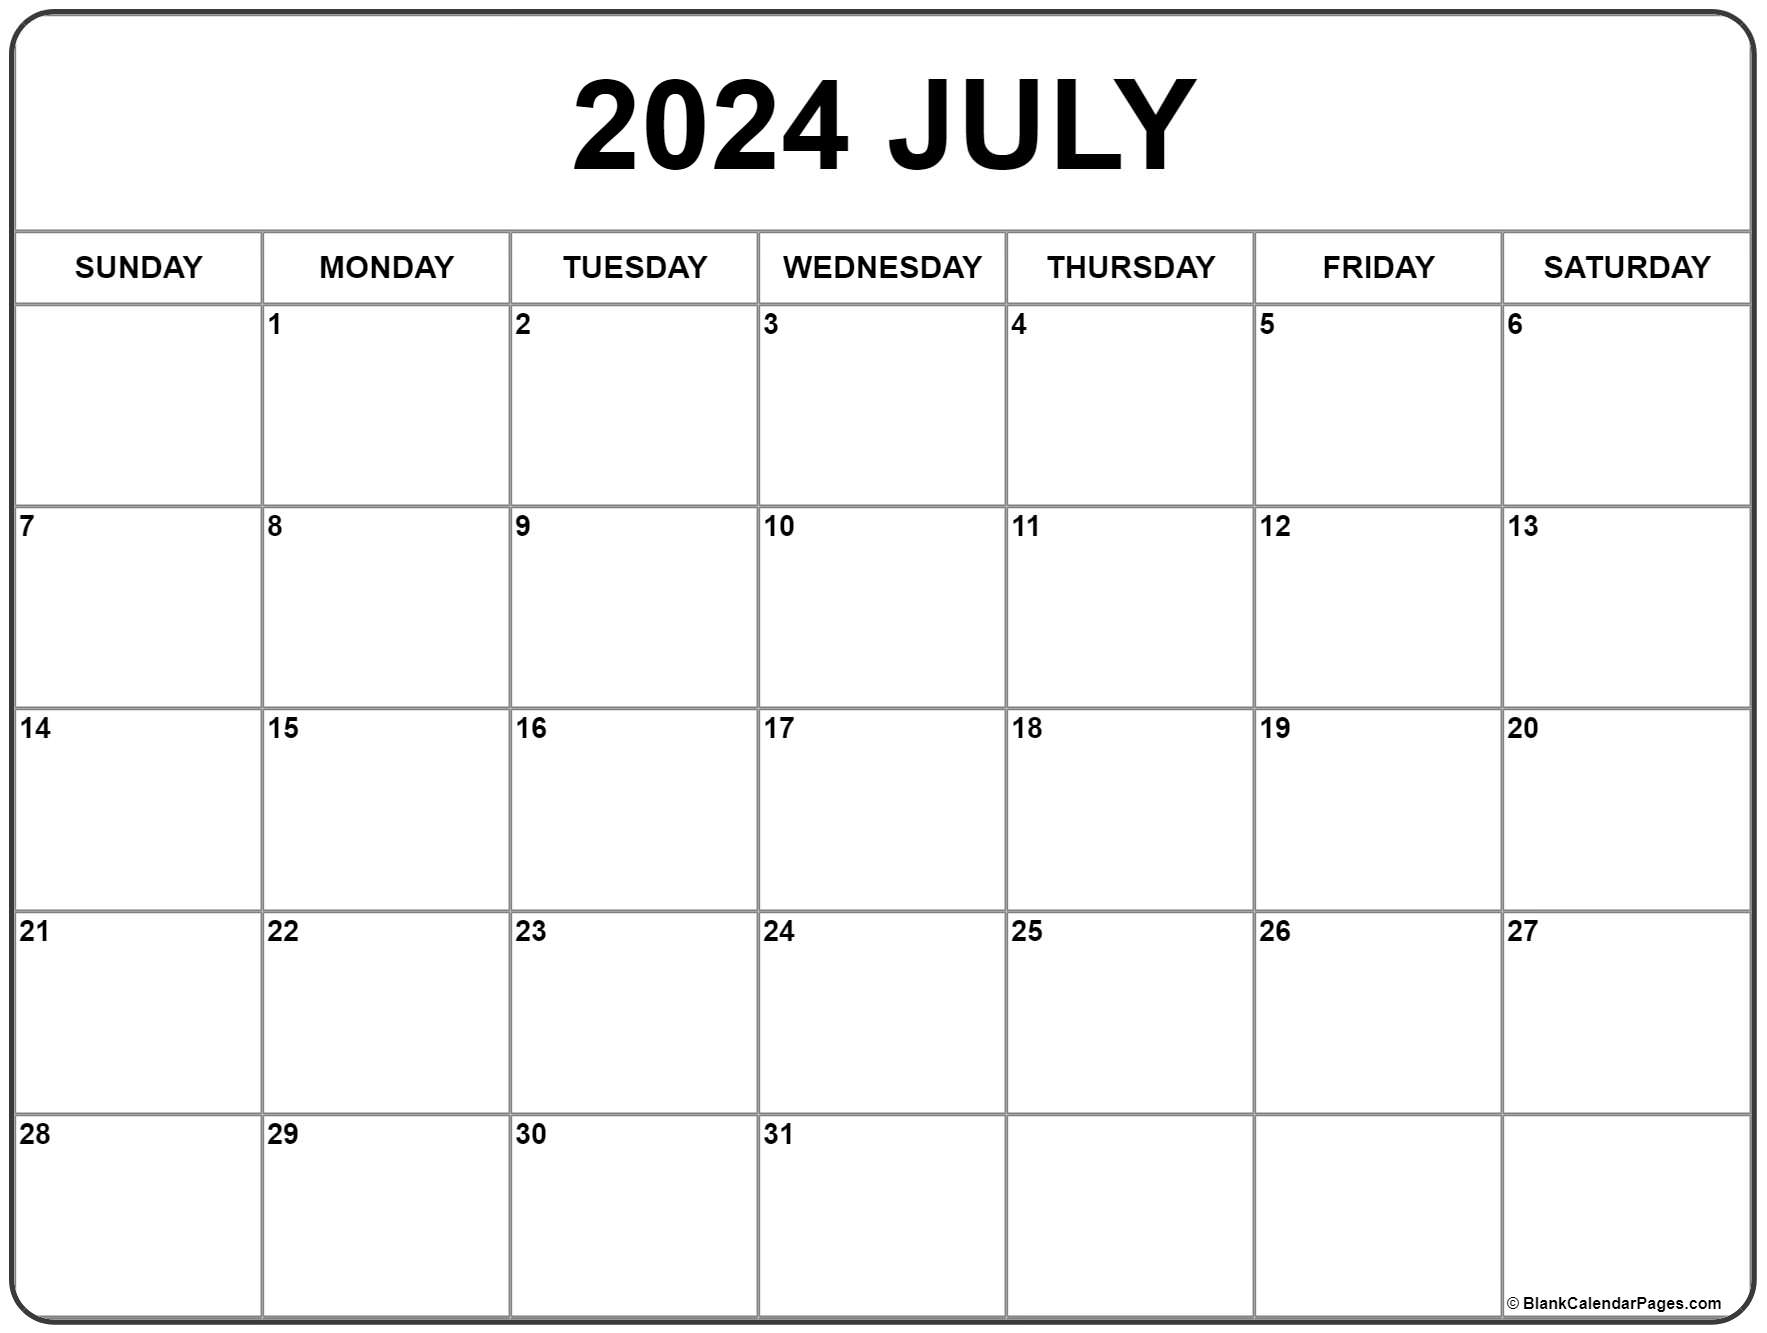 July 2024 Calendar | Free Printable Calendar | Free Printable Weekly Calendar July 2024